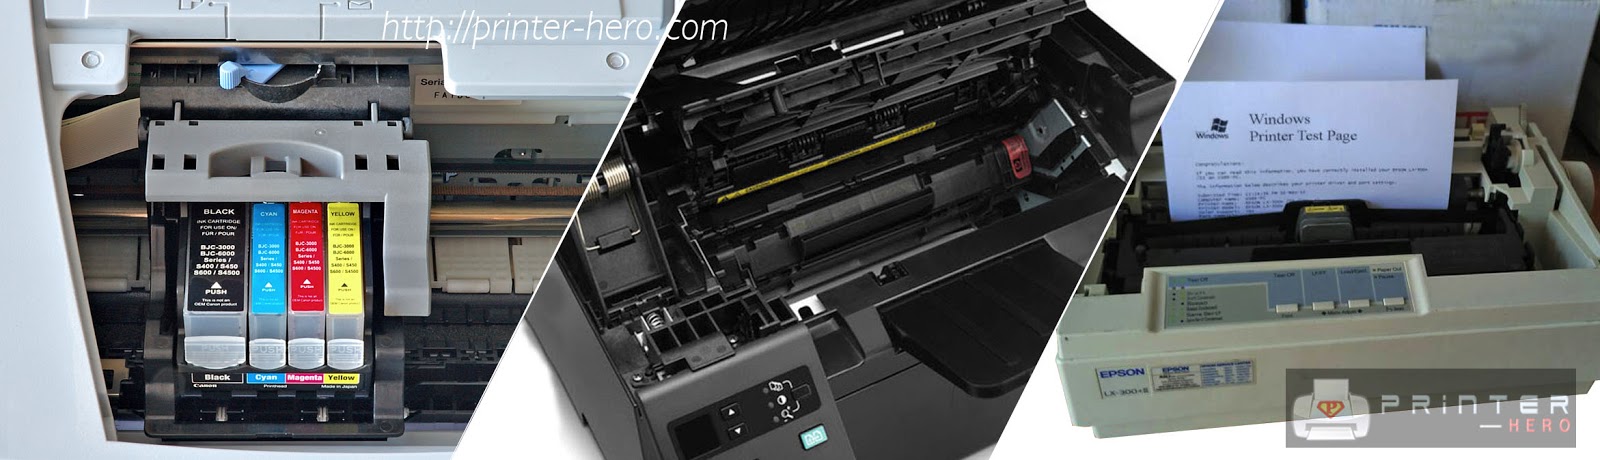 Jenis printer yang bisa dipilih untuk pencetakan